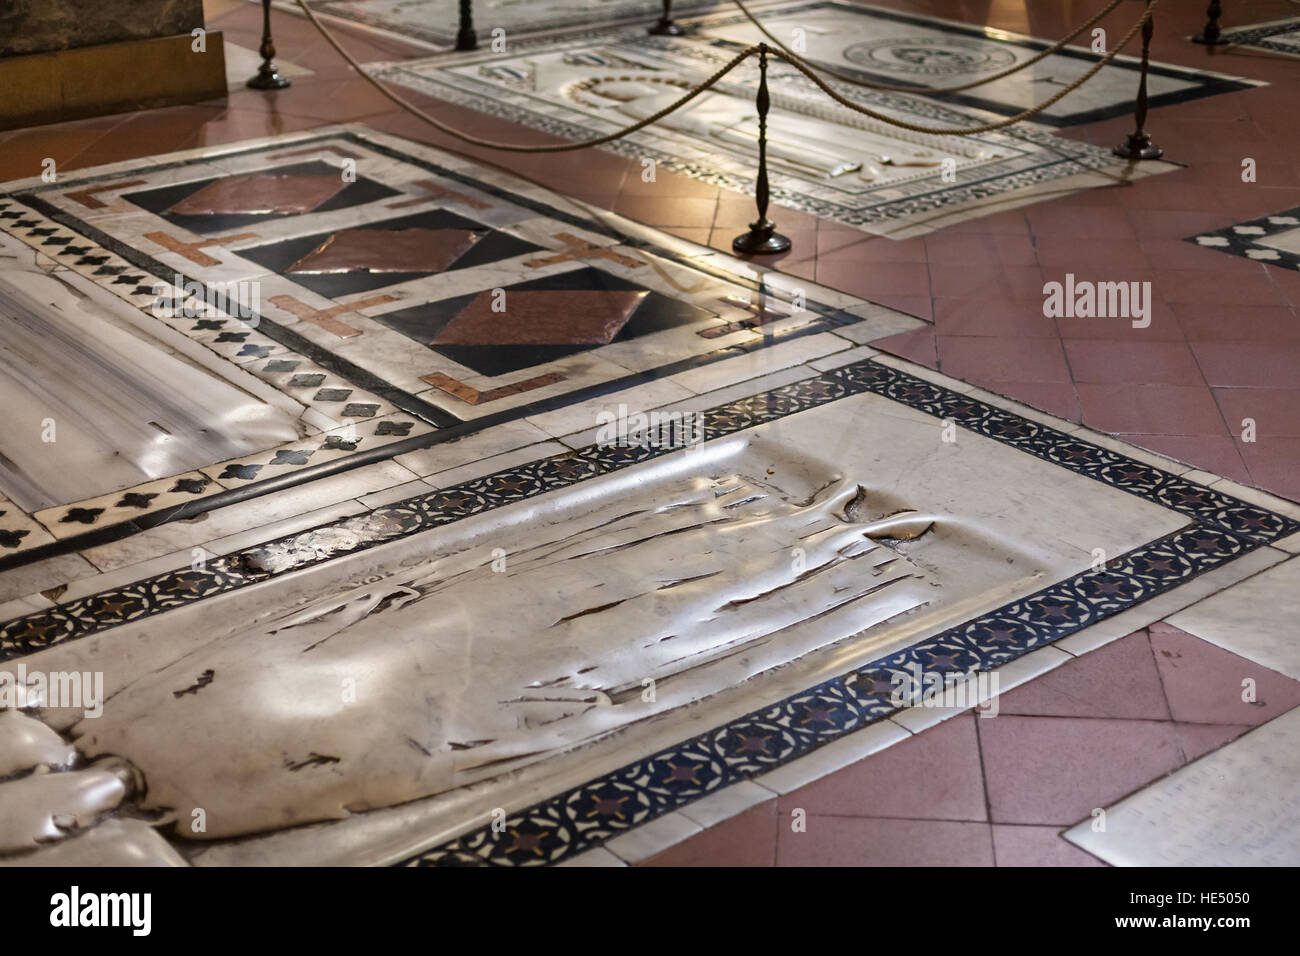 Florencia, Italia - 6 de noviembre de 2016: tumbas en el piso de la  Basílica di Santa